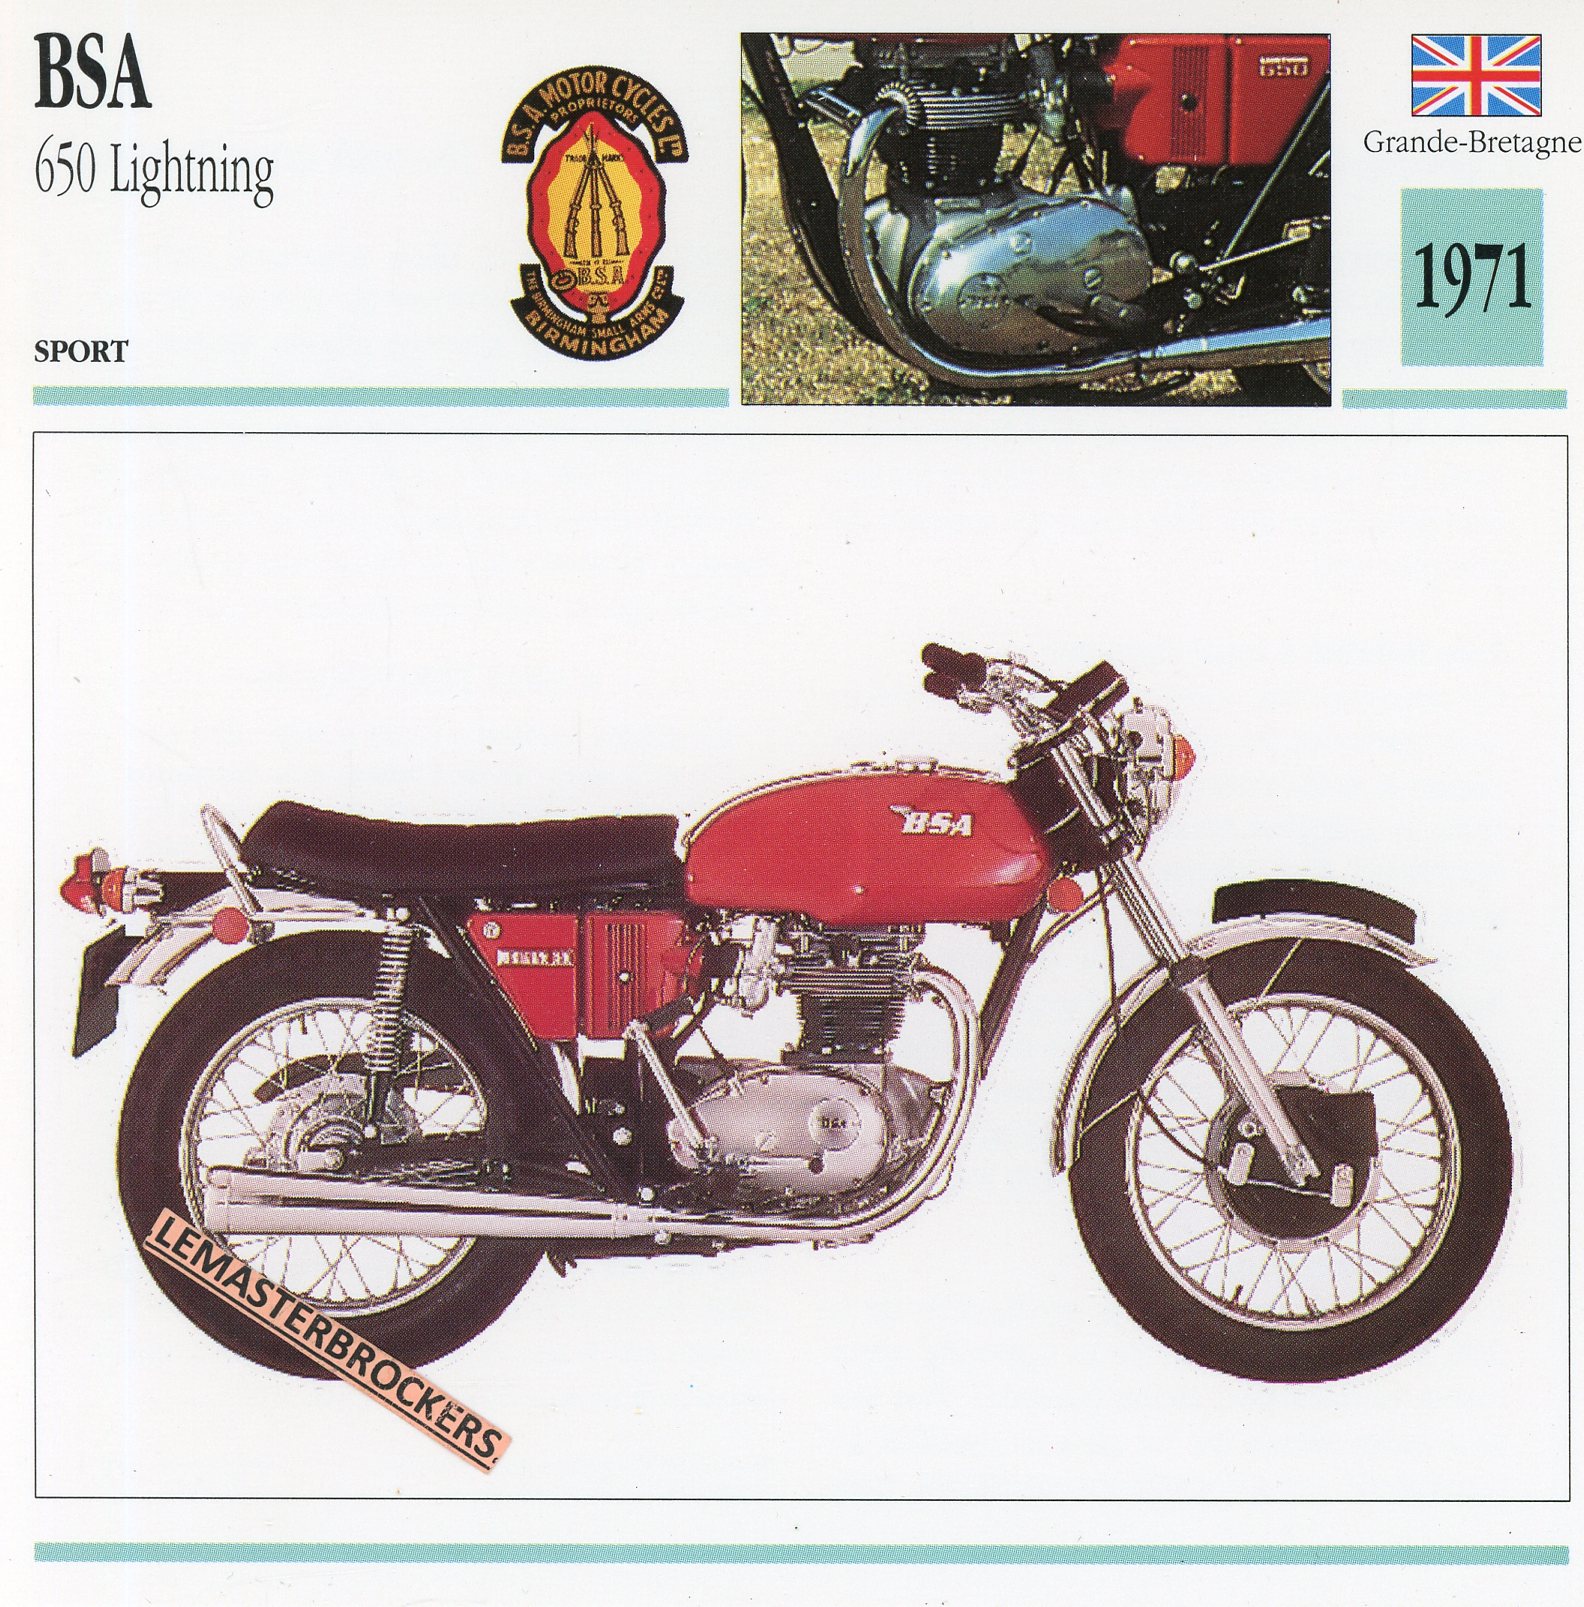 BSA-650-LIGHTNING-1971-FICHE-MOTO-CARDS-ATLAS-LEMASTERBROCKERS